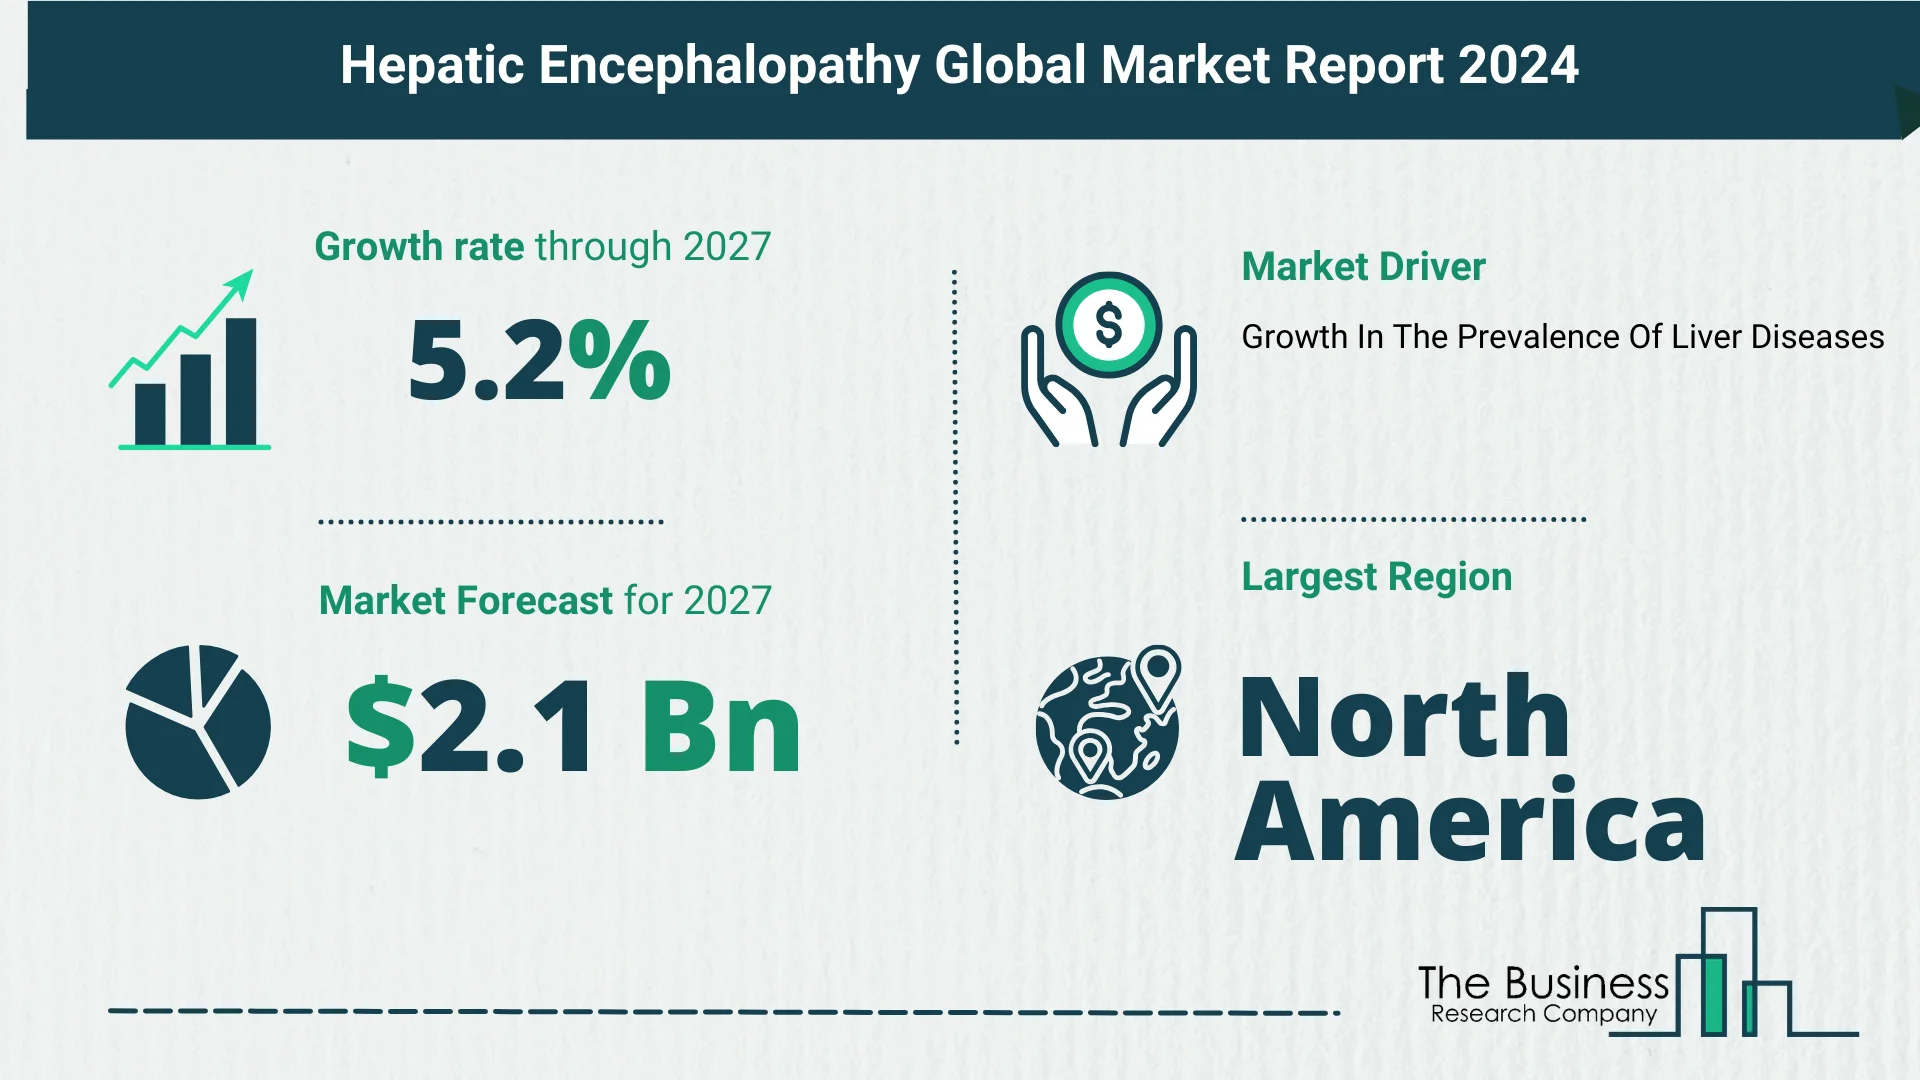 Global Hepatic Encephalopathy Market Size